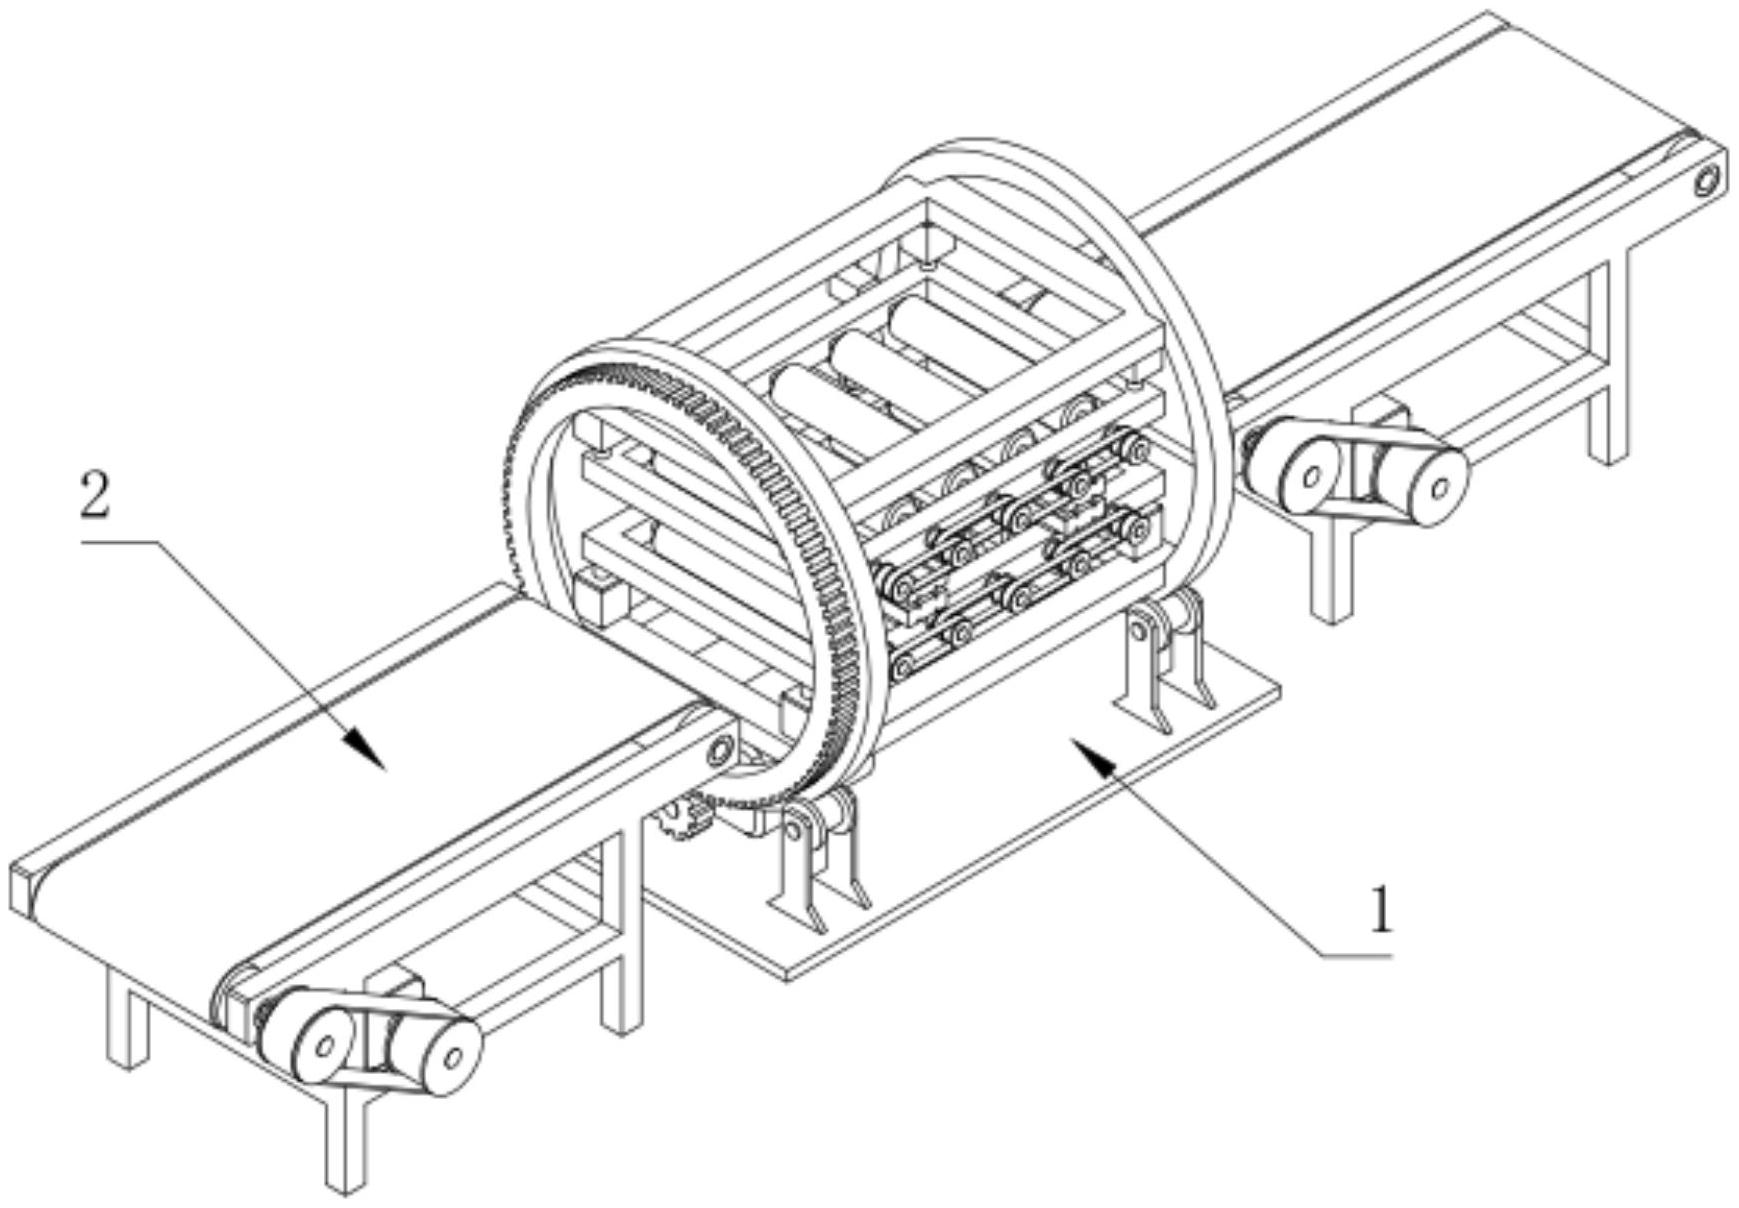 一种母线槽生产线的自动翻转机构专利图